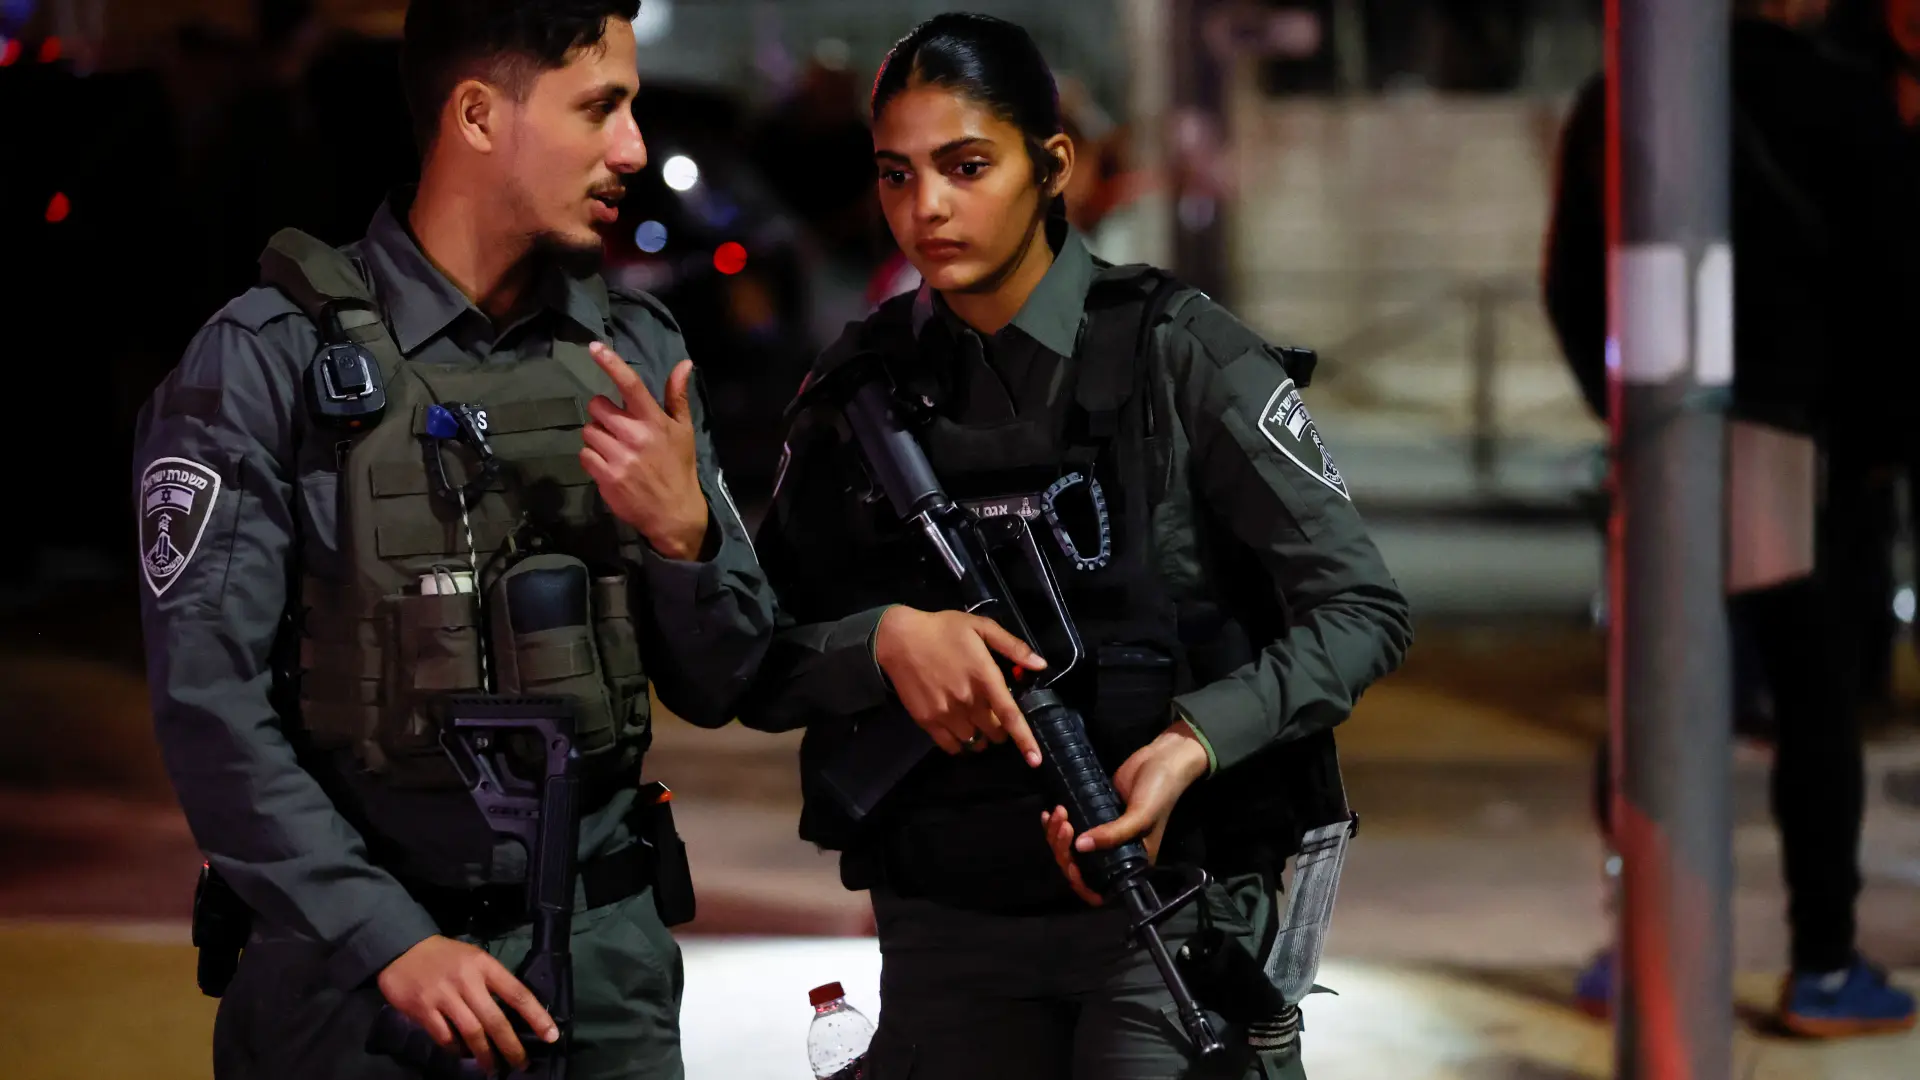 Jerusalim_teroristički napad_policajci_Foto Reuters-63d4ed317cdaa.webp